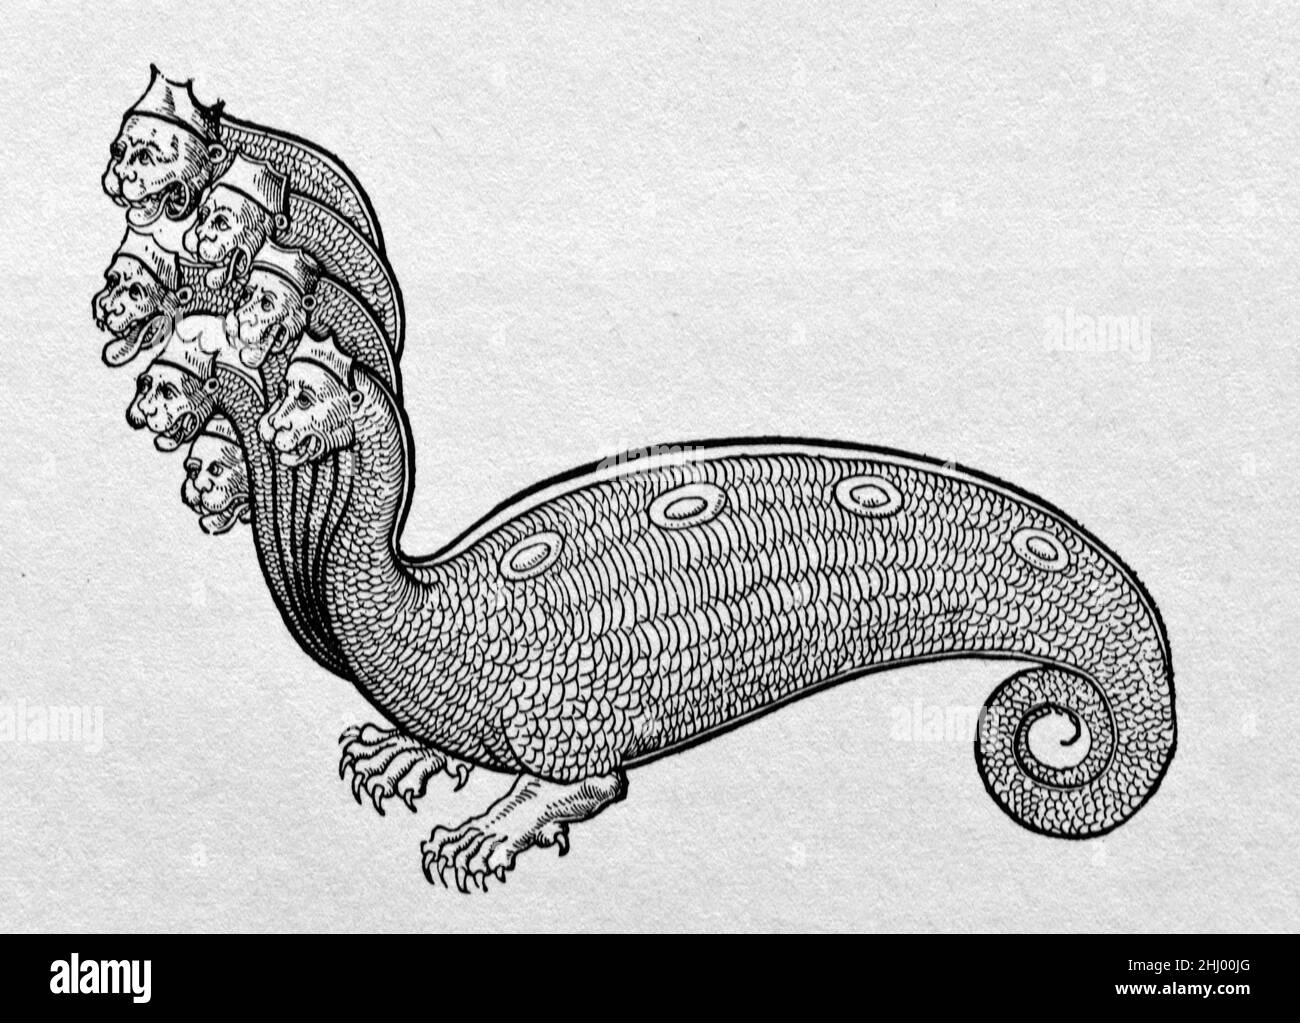 Bête à plusieurs têtes, Bête à sept têtes ou Hydra mythique d'Historia Animalium par Gesner Conrad publié 1551-1558.Imprimé, gravure ou illustration de bois d'époque Banque D'Images